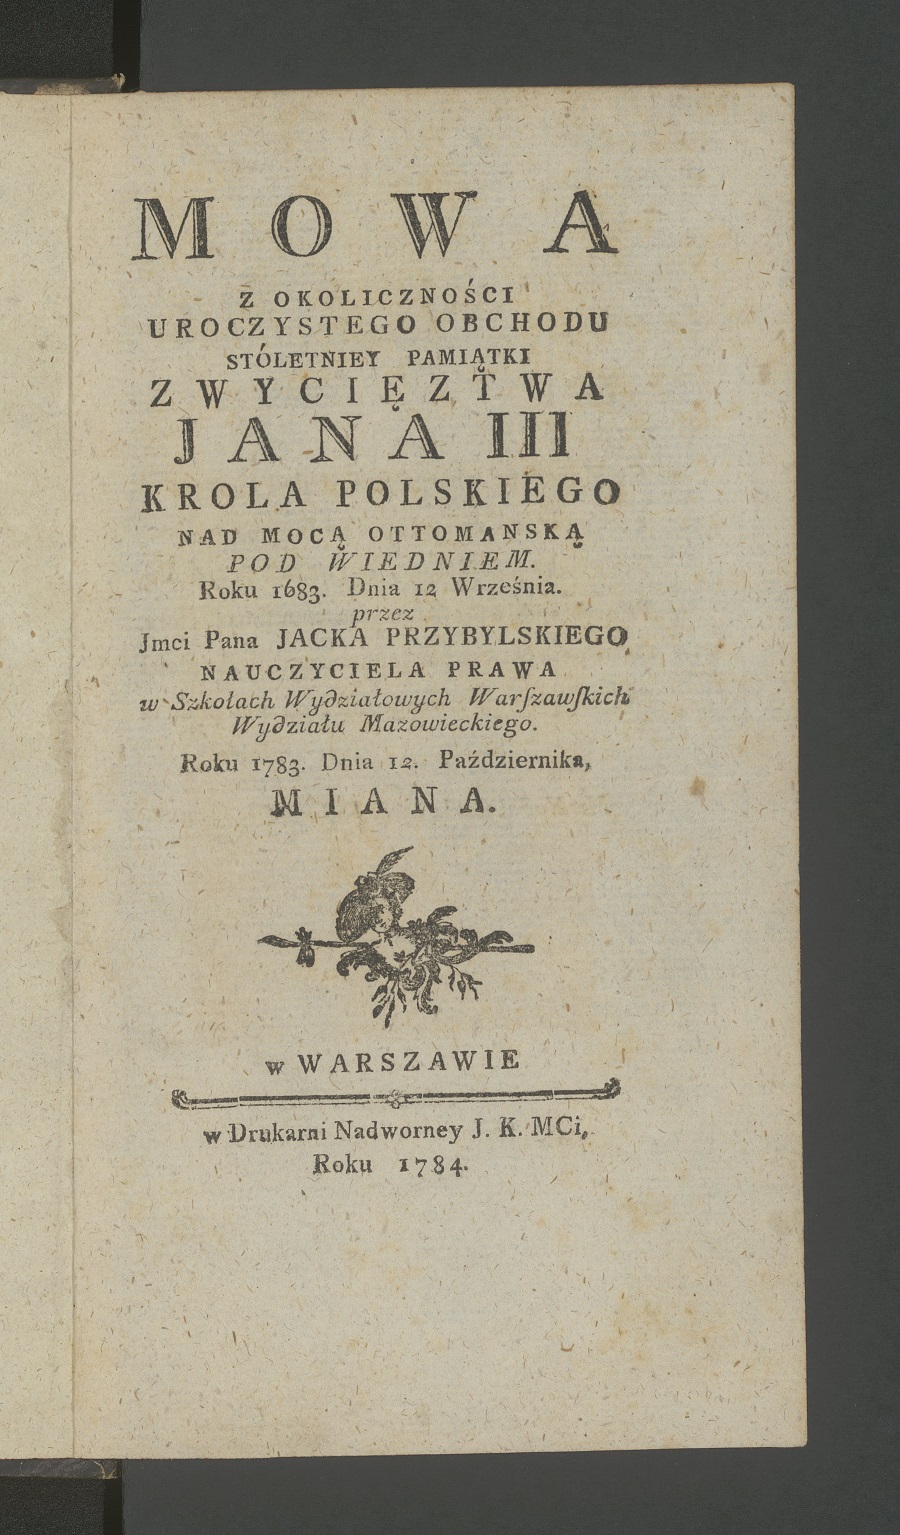 Jacek Przybylski, Mowa Z Okoliczności Uroczystego Obchodu Stóletniey Pamiątki Zwycięztwa Jana III..., 1784.jpg